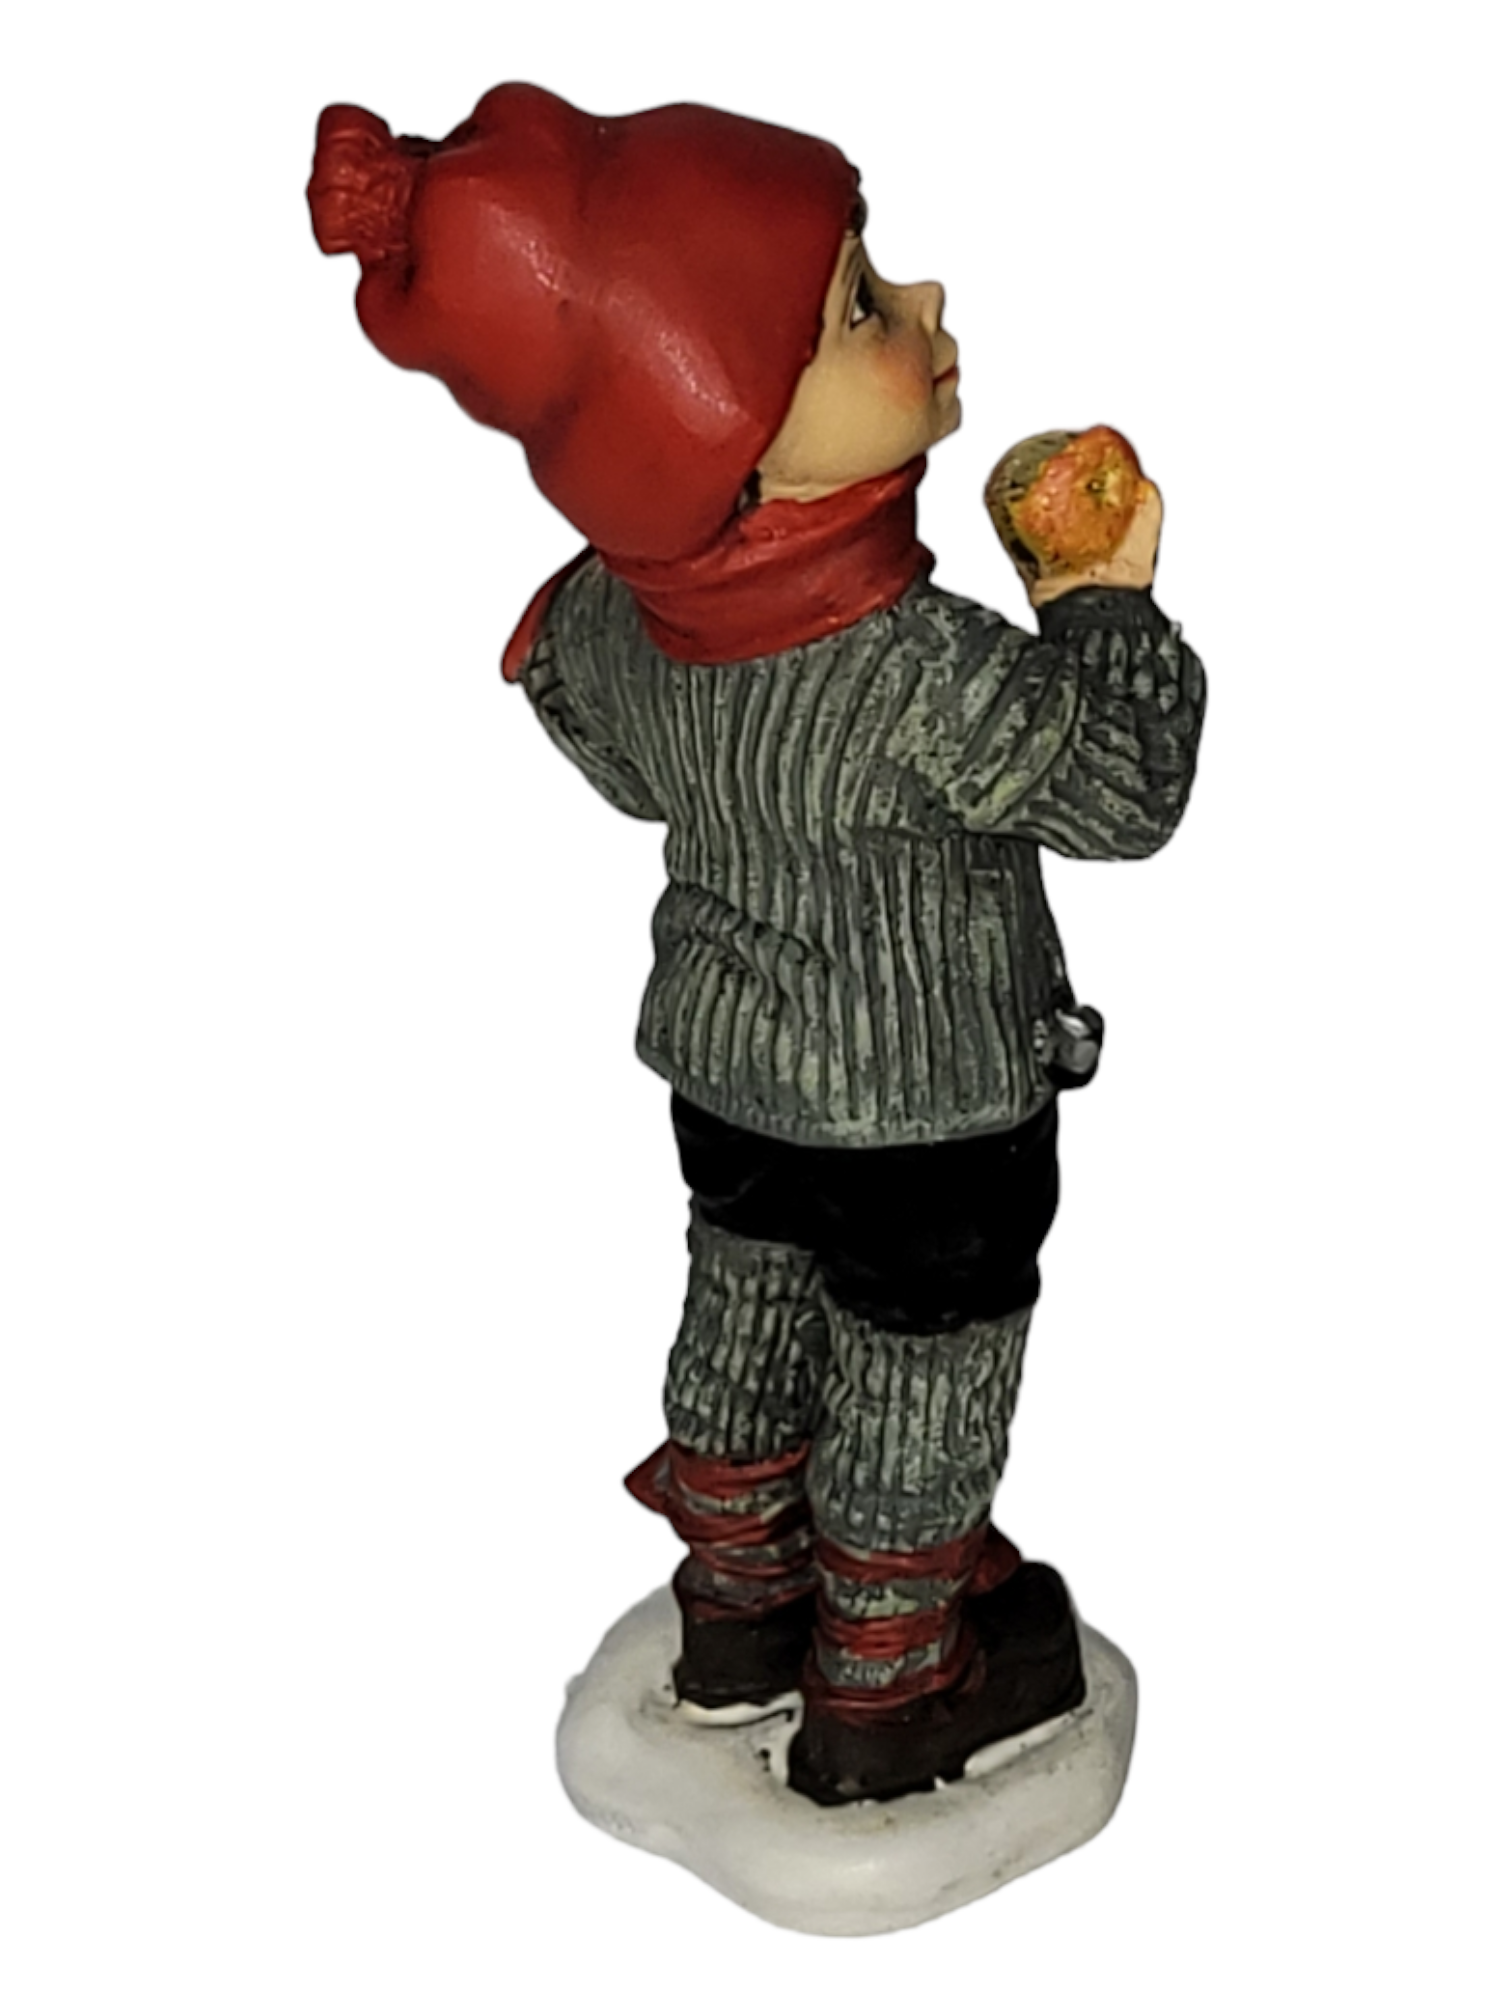 Figurine: Apple Boy Large